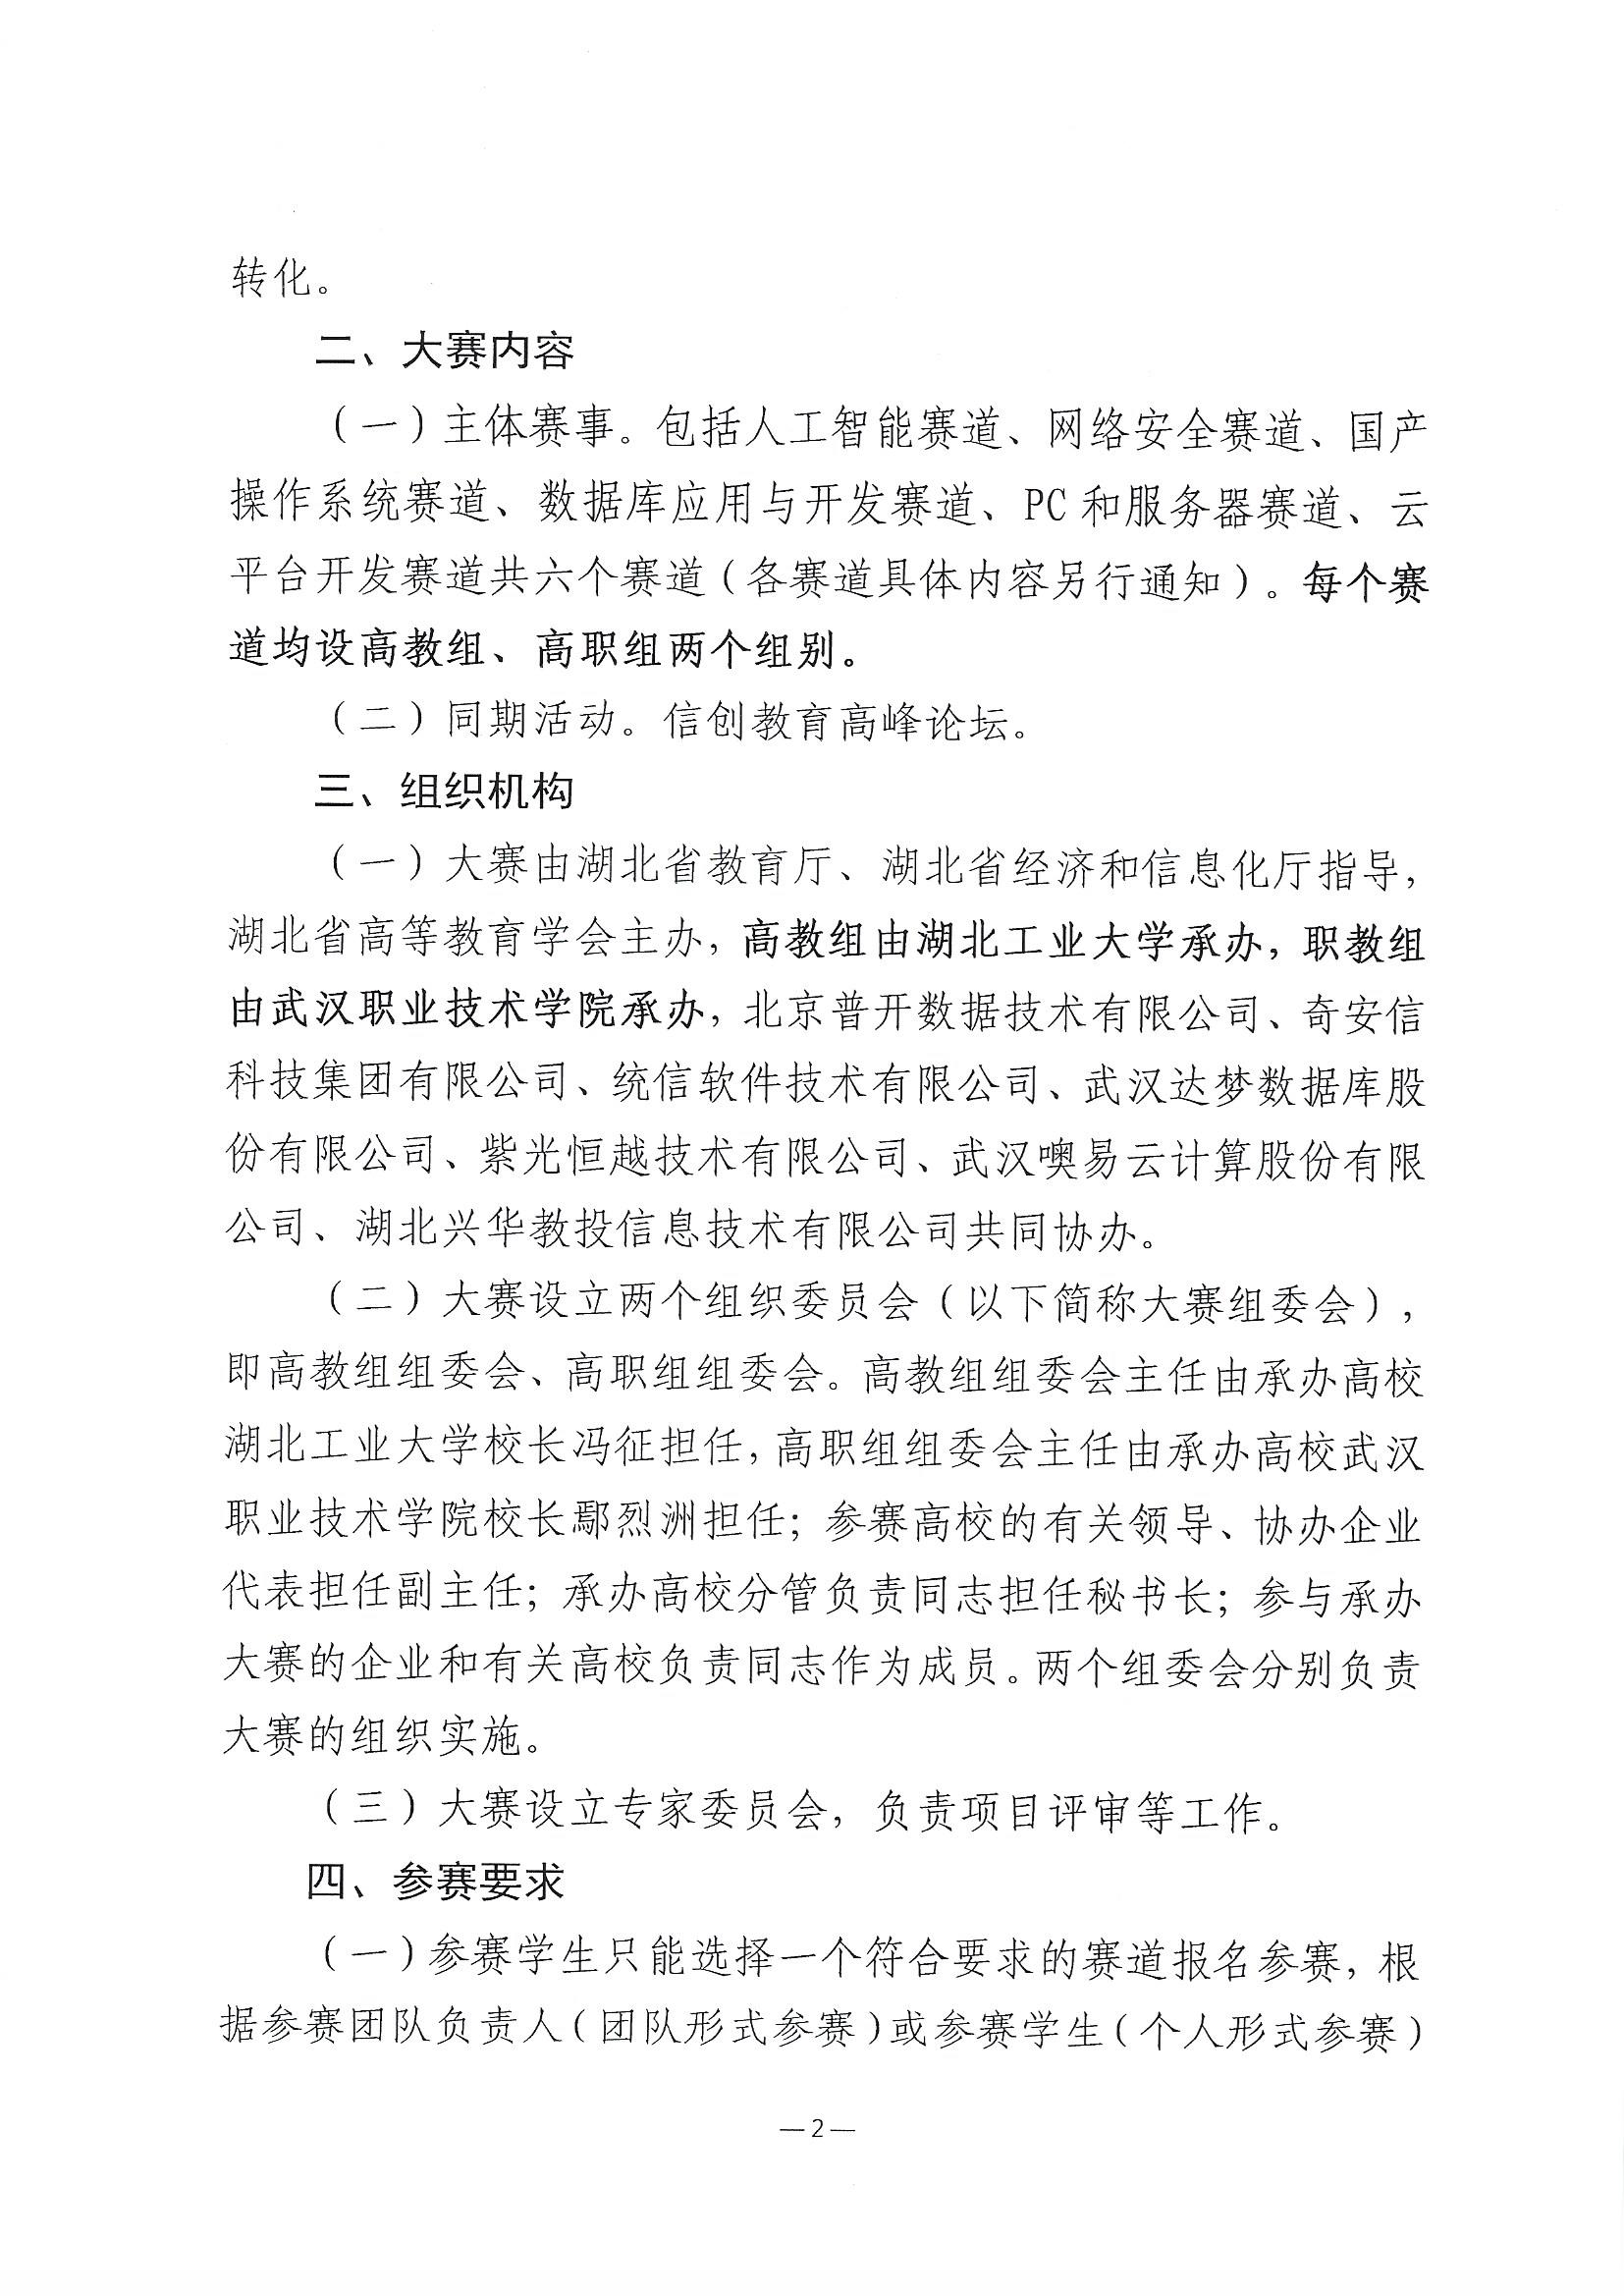 2023.11.9关于举办第三届湖北省大学生信创大赛的通知(1)_页面_2.jpg